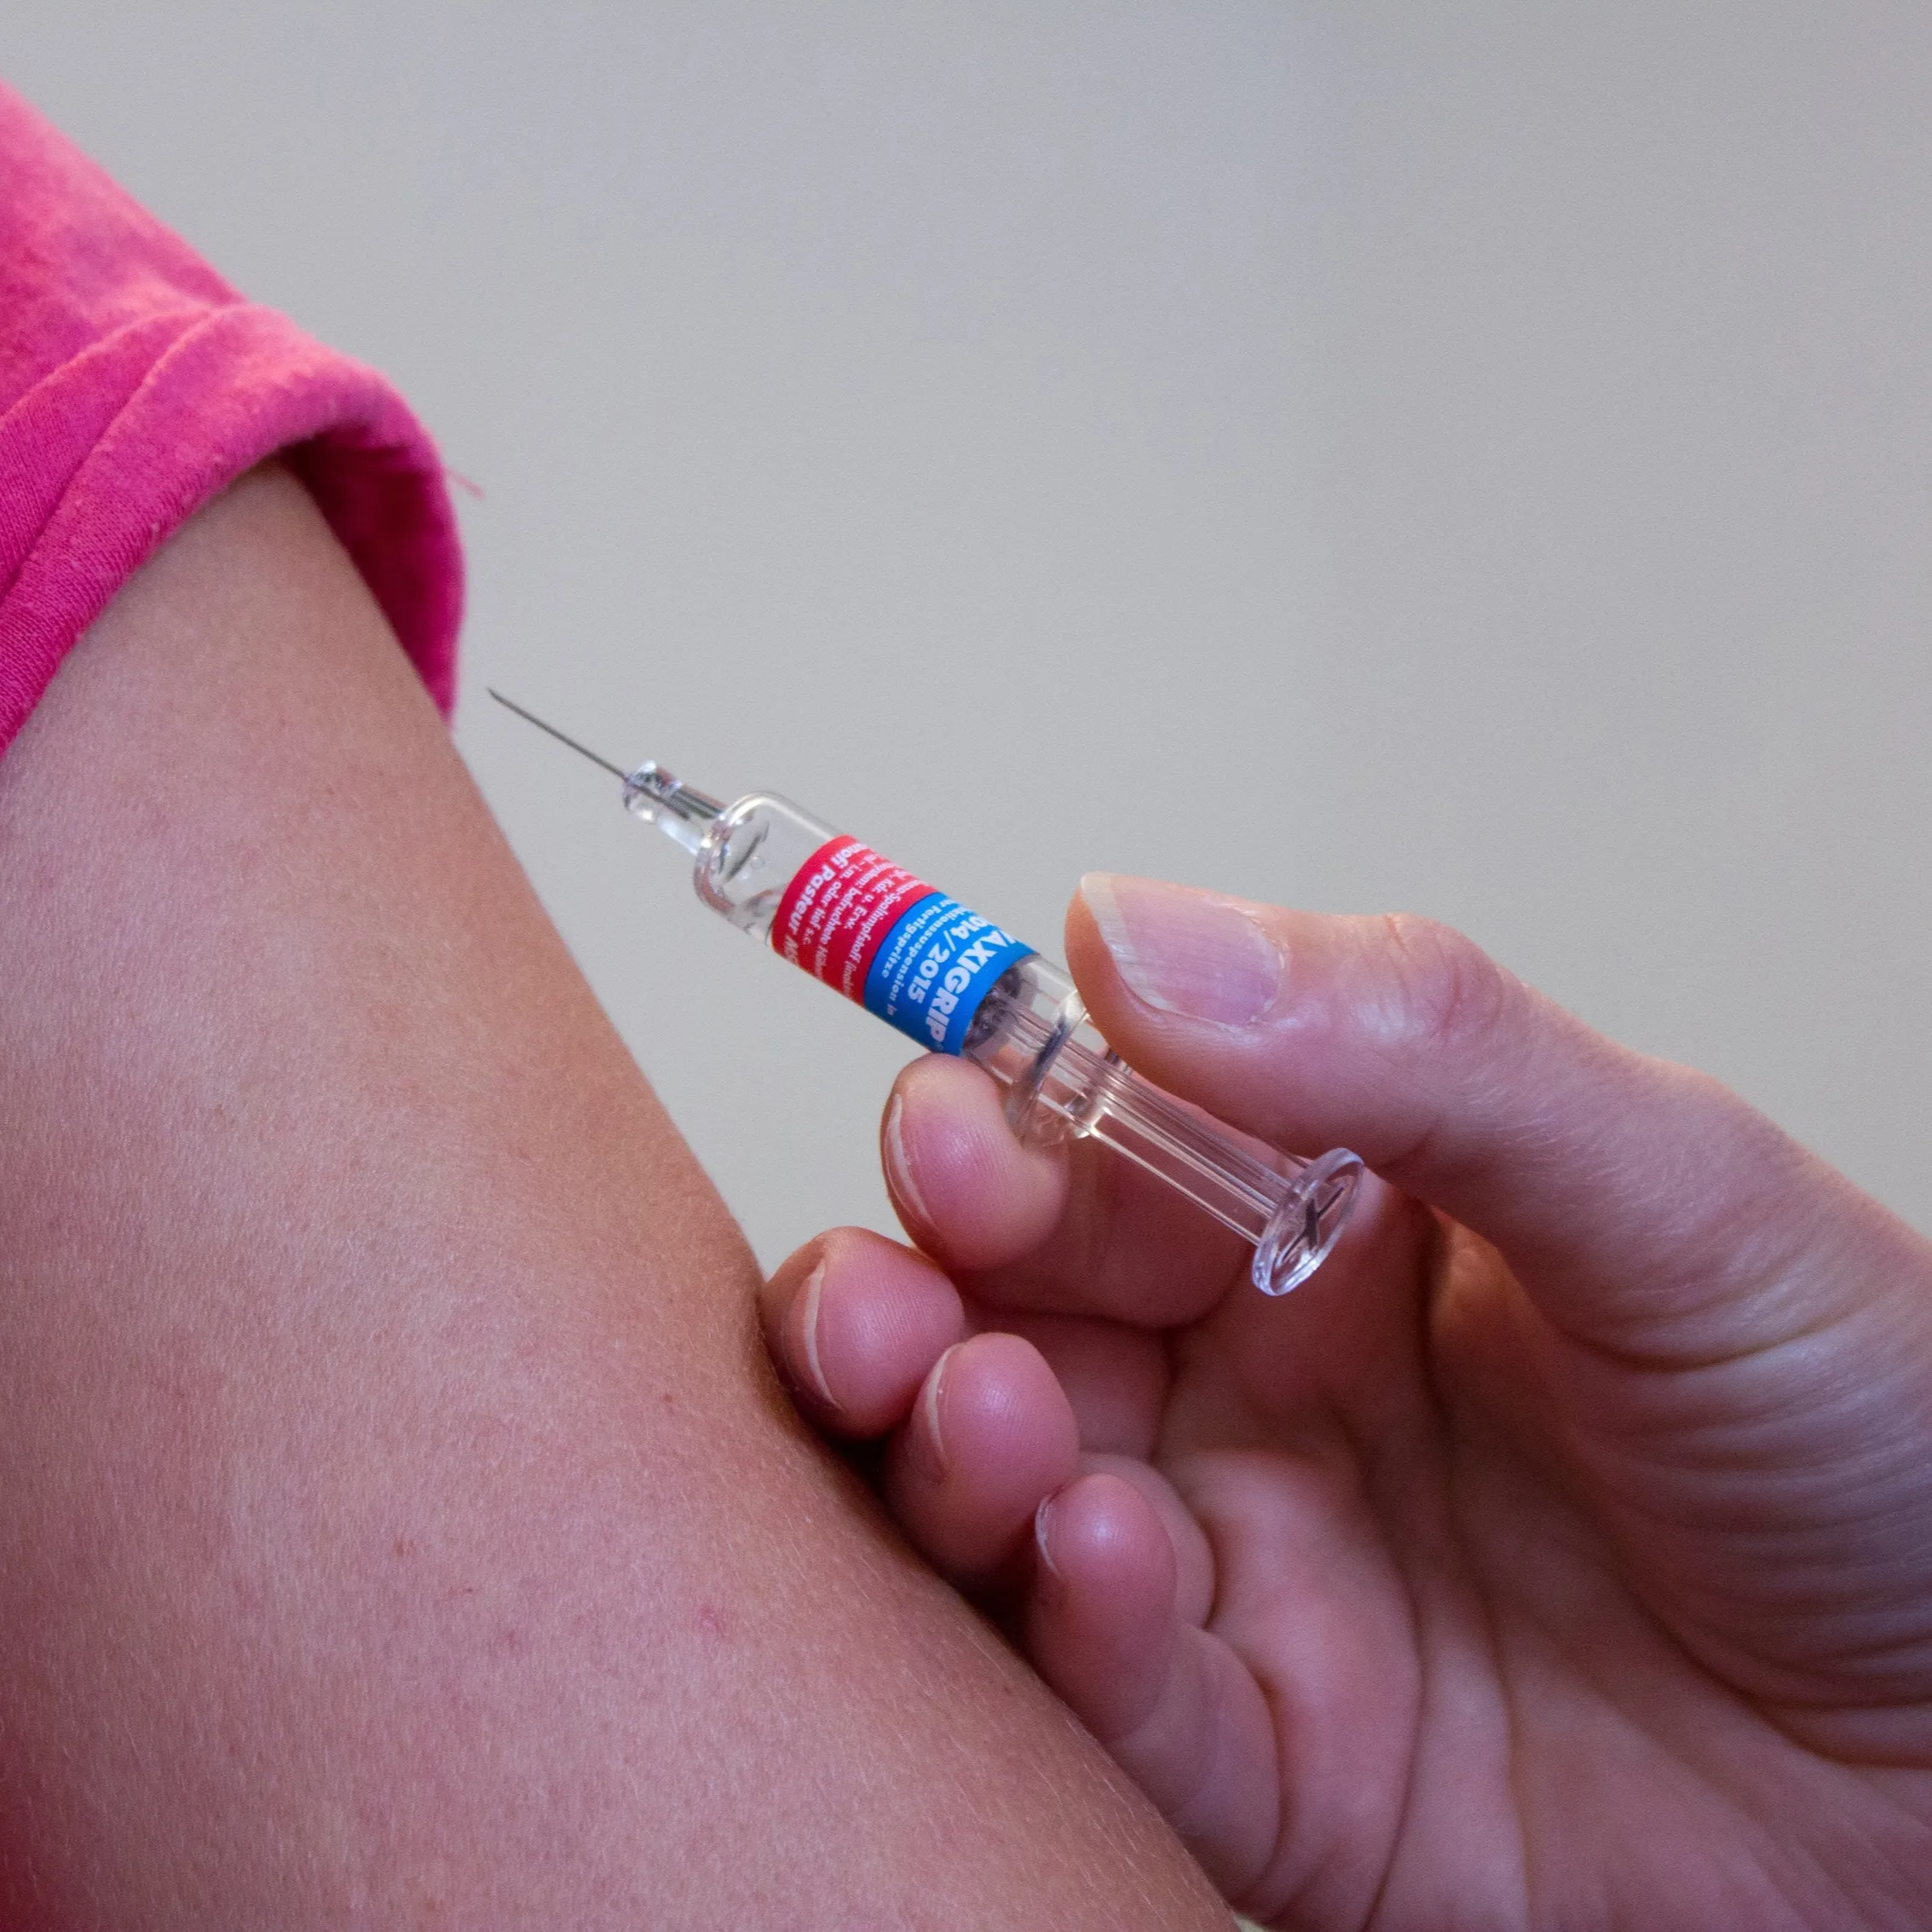 nueva campaña de vacunación contra el VPH desde el inicio del curso escolar